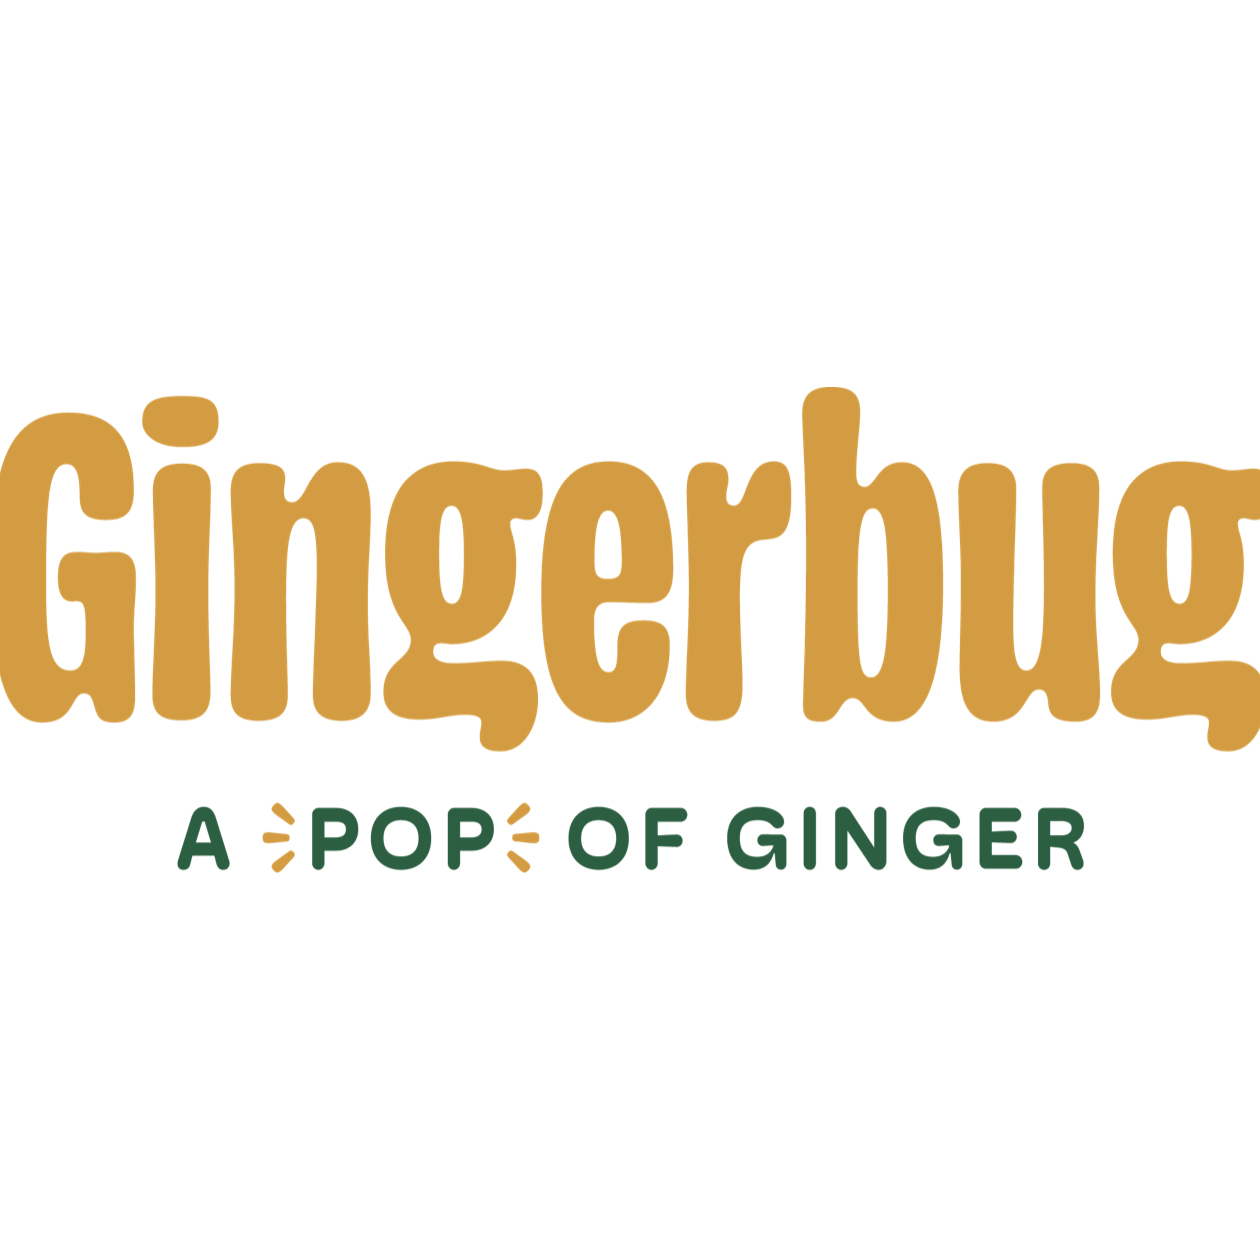 GingerBug